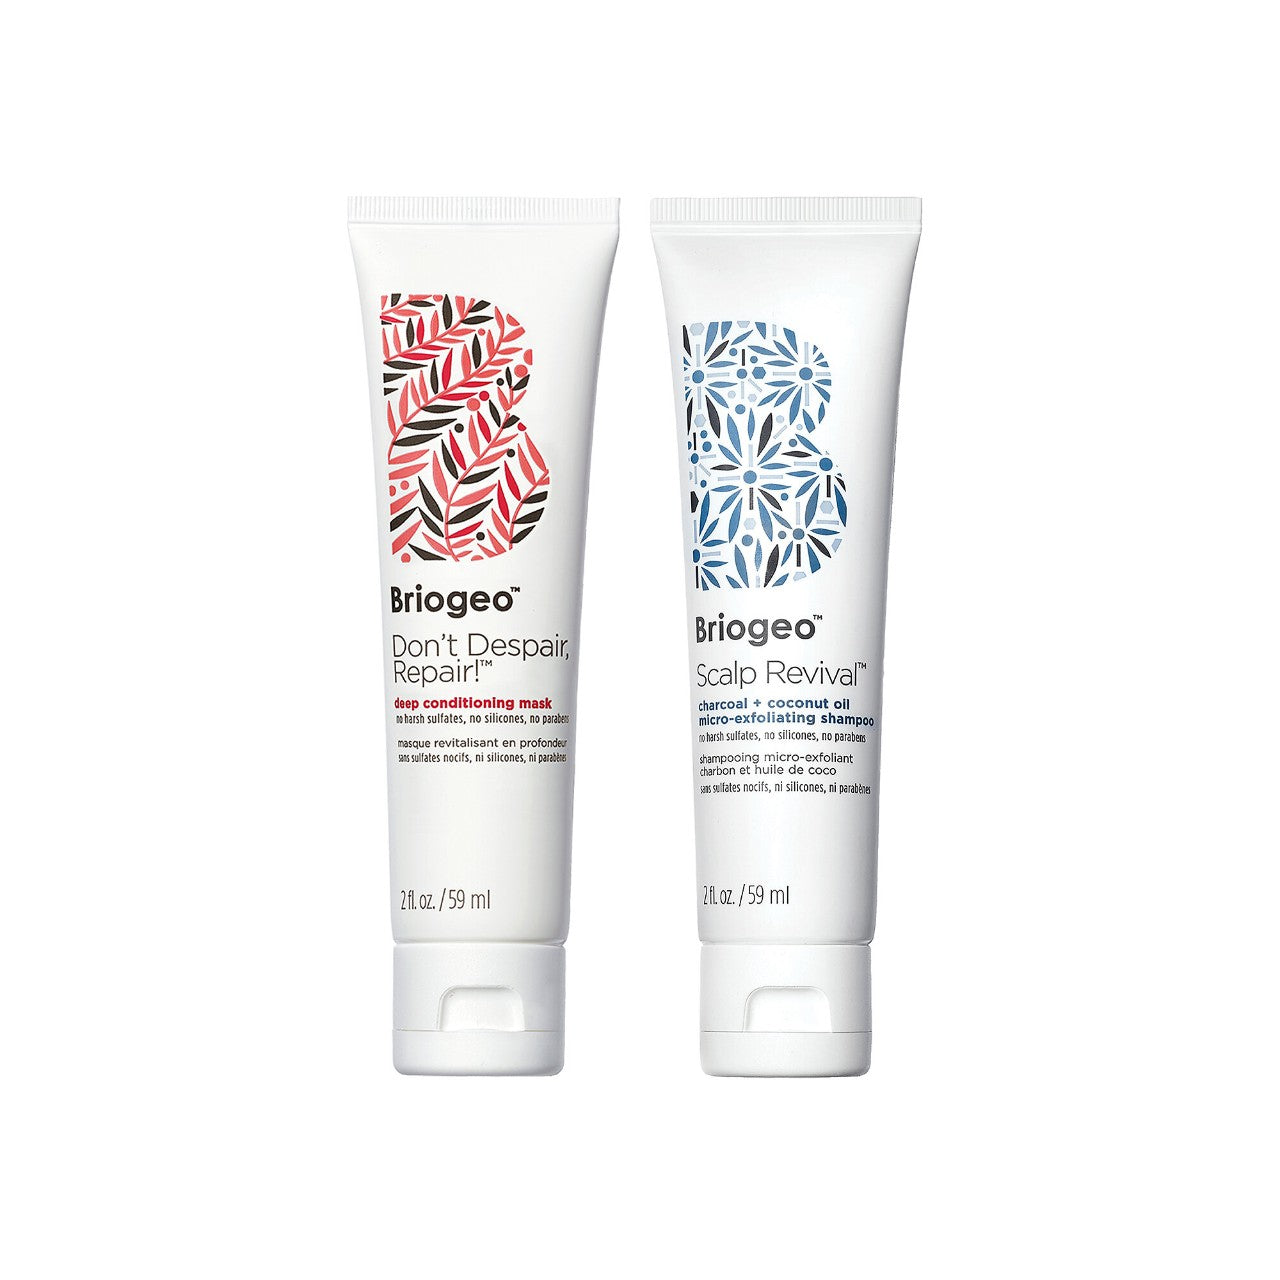 Briogeo | Scalp Revival™ Shampoo + Don’t Despair, Repair!™ Hair Mask Travel Gift Set